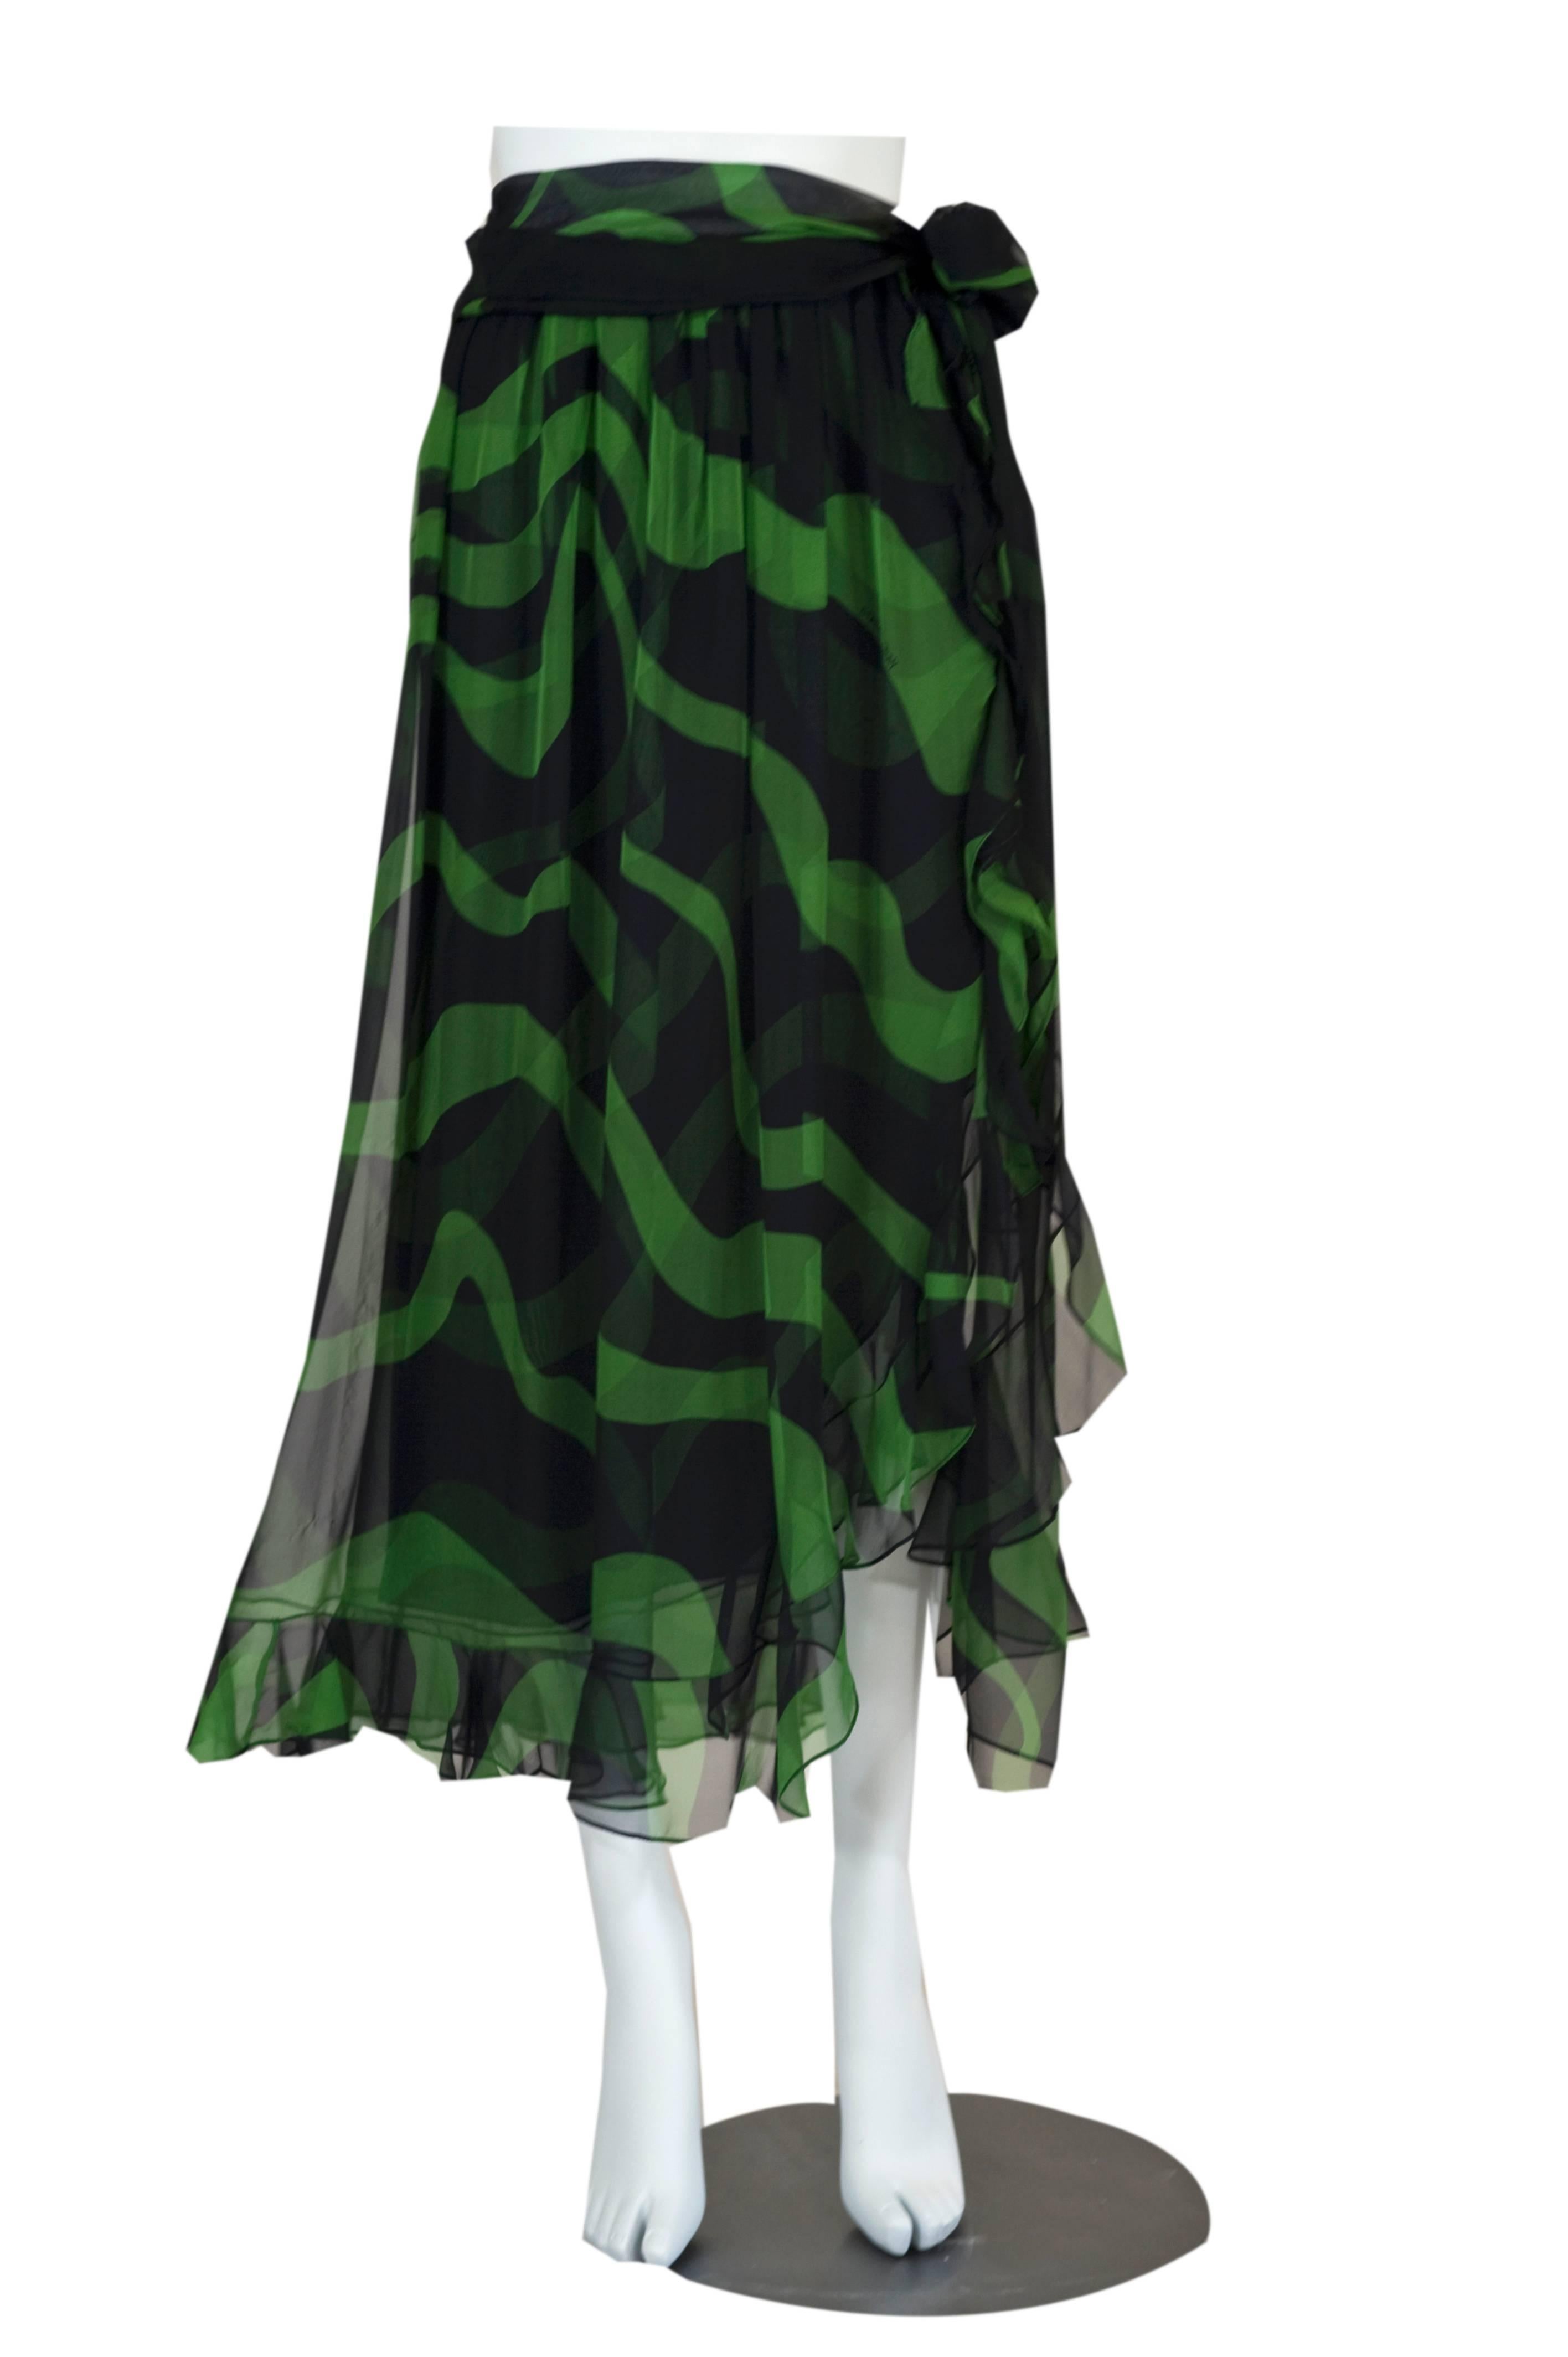 C'est un fabuleux  Soie YSL  jupe flamenco. Fabriqué en fine mousseline de soie légère et aérée qui procure une sensation incroyable contre le corps. J'adore le motif tourbillon abstrait noir et vert de minuit. La jupe est terminée par un bord